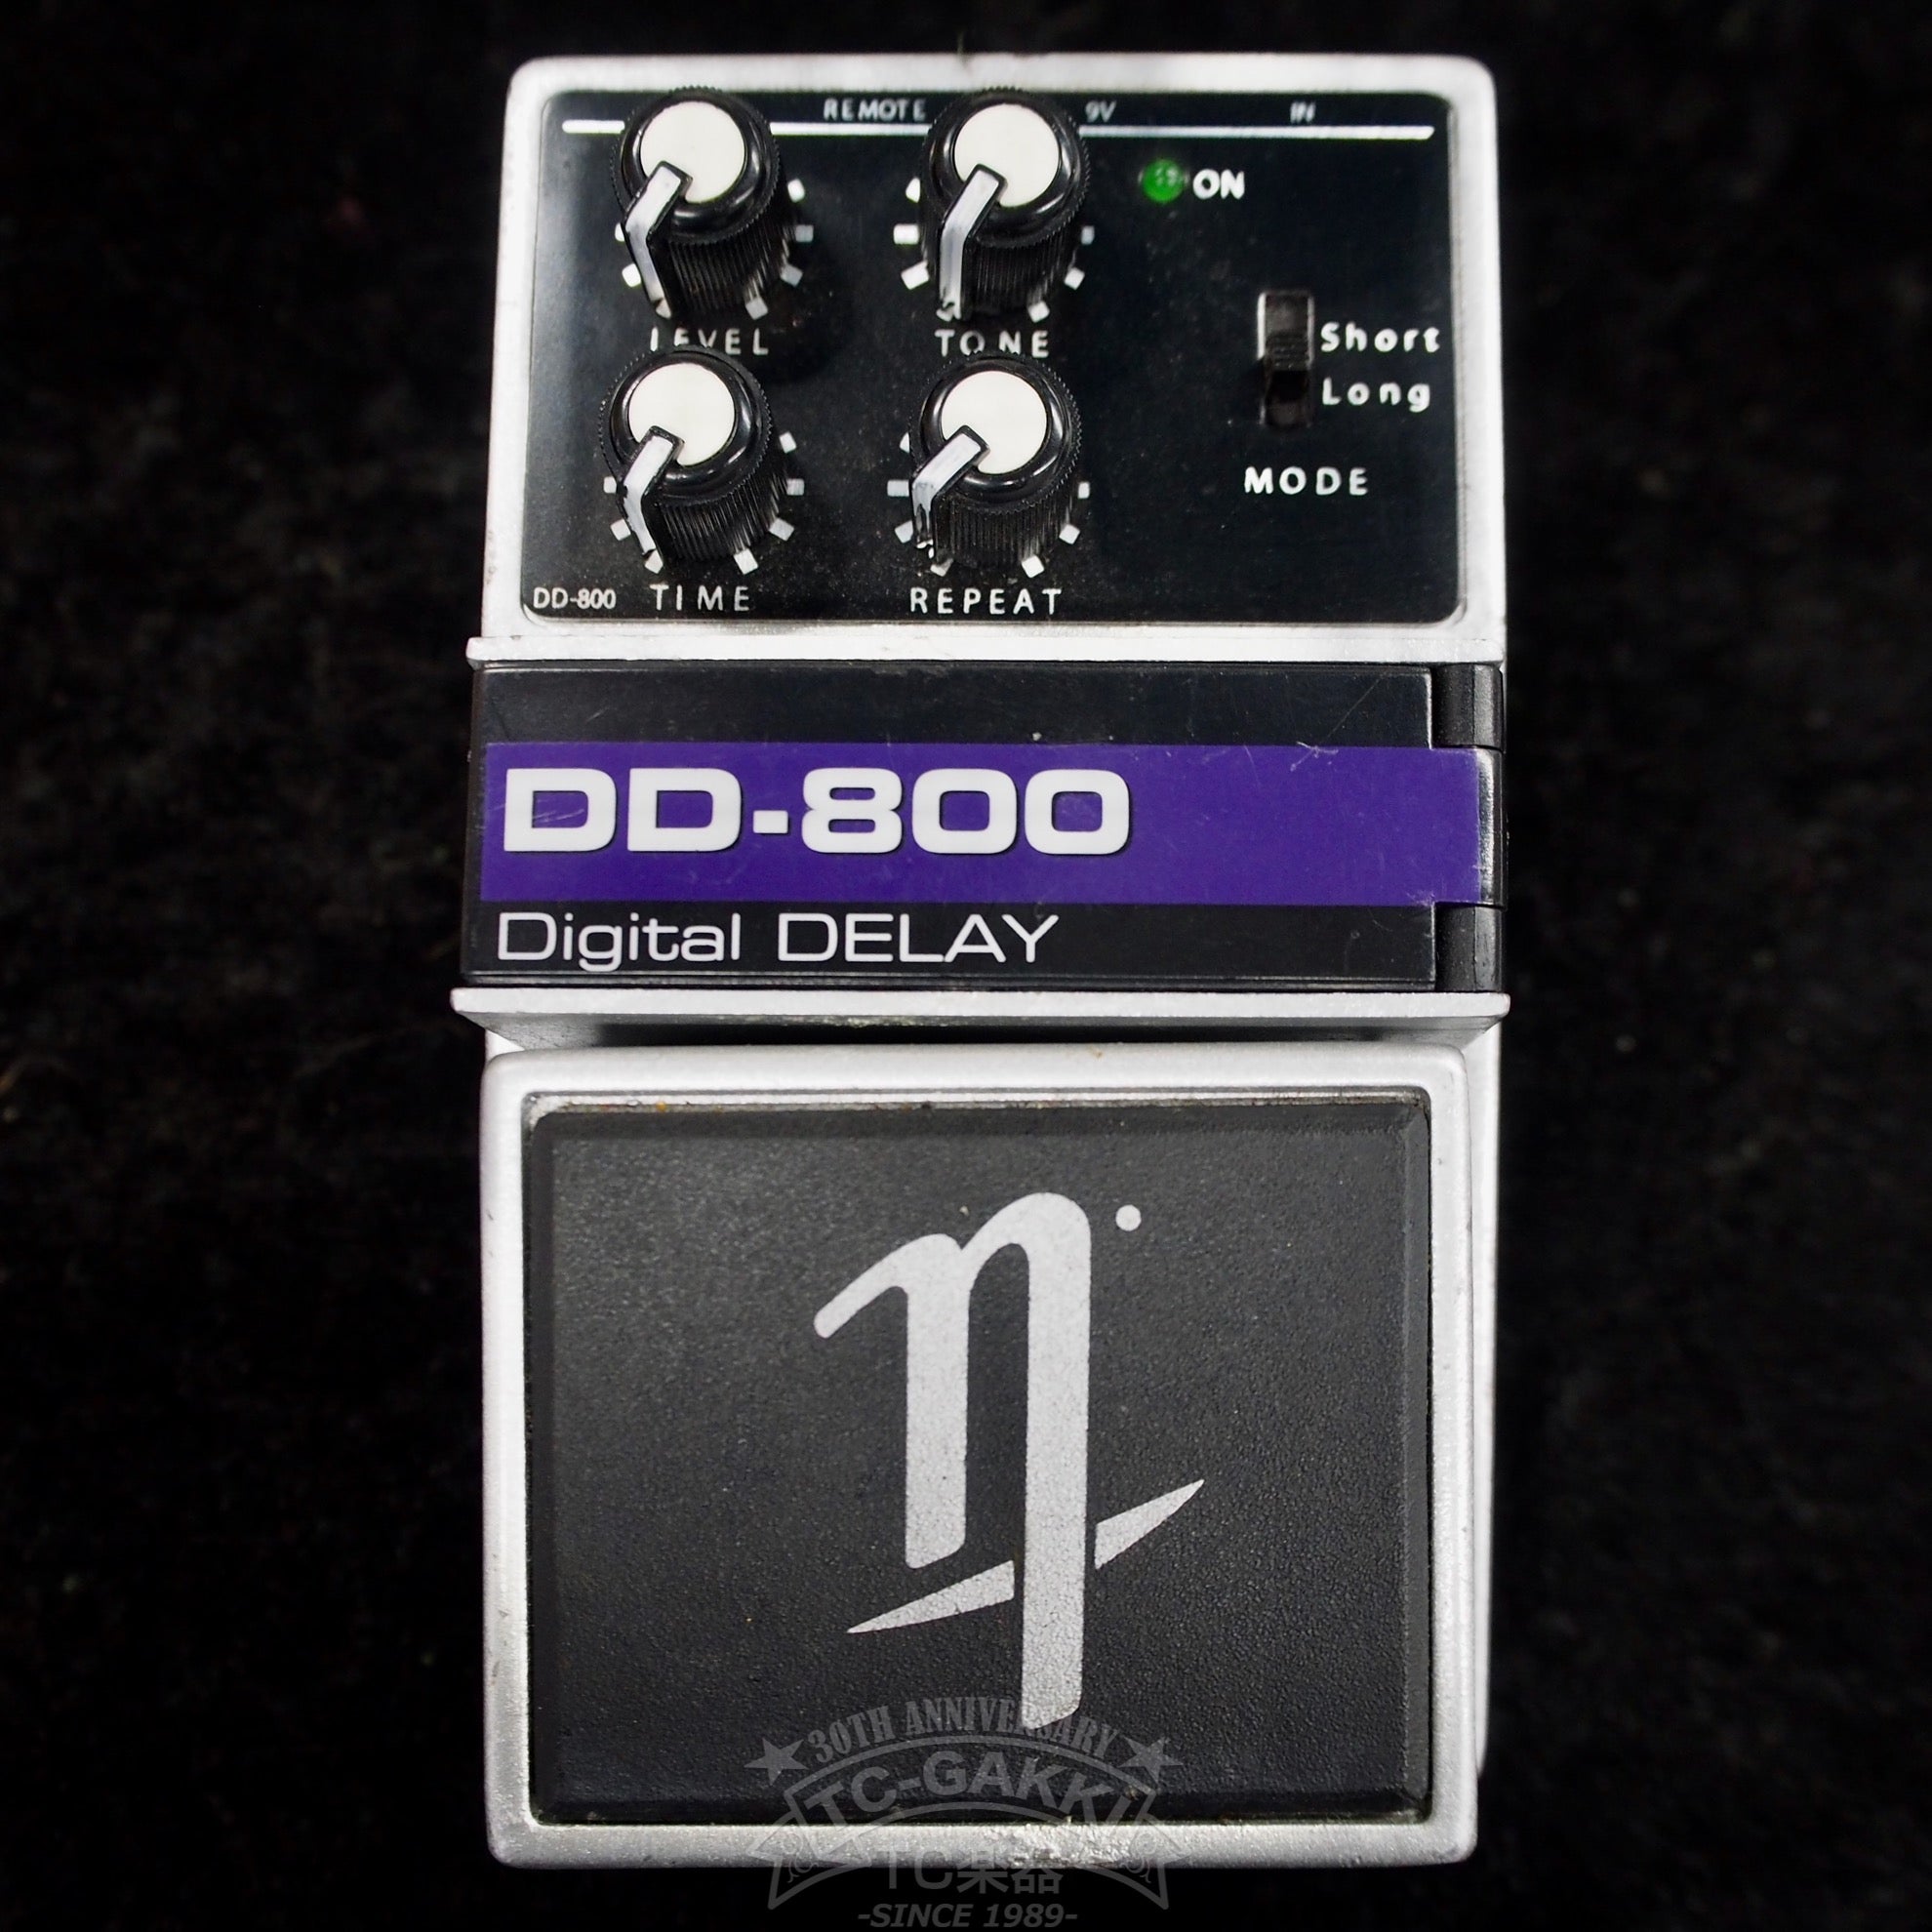 DD-800 Digital DELAY - TC楽器 - TCGAKKI